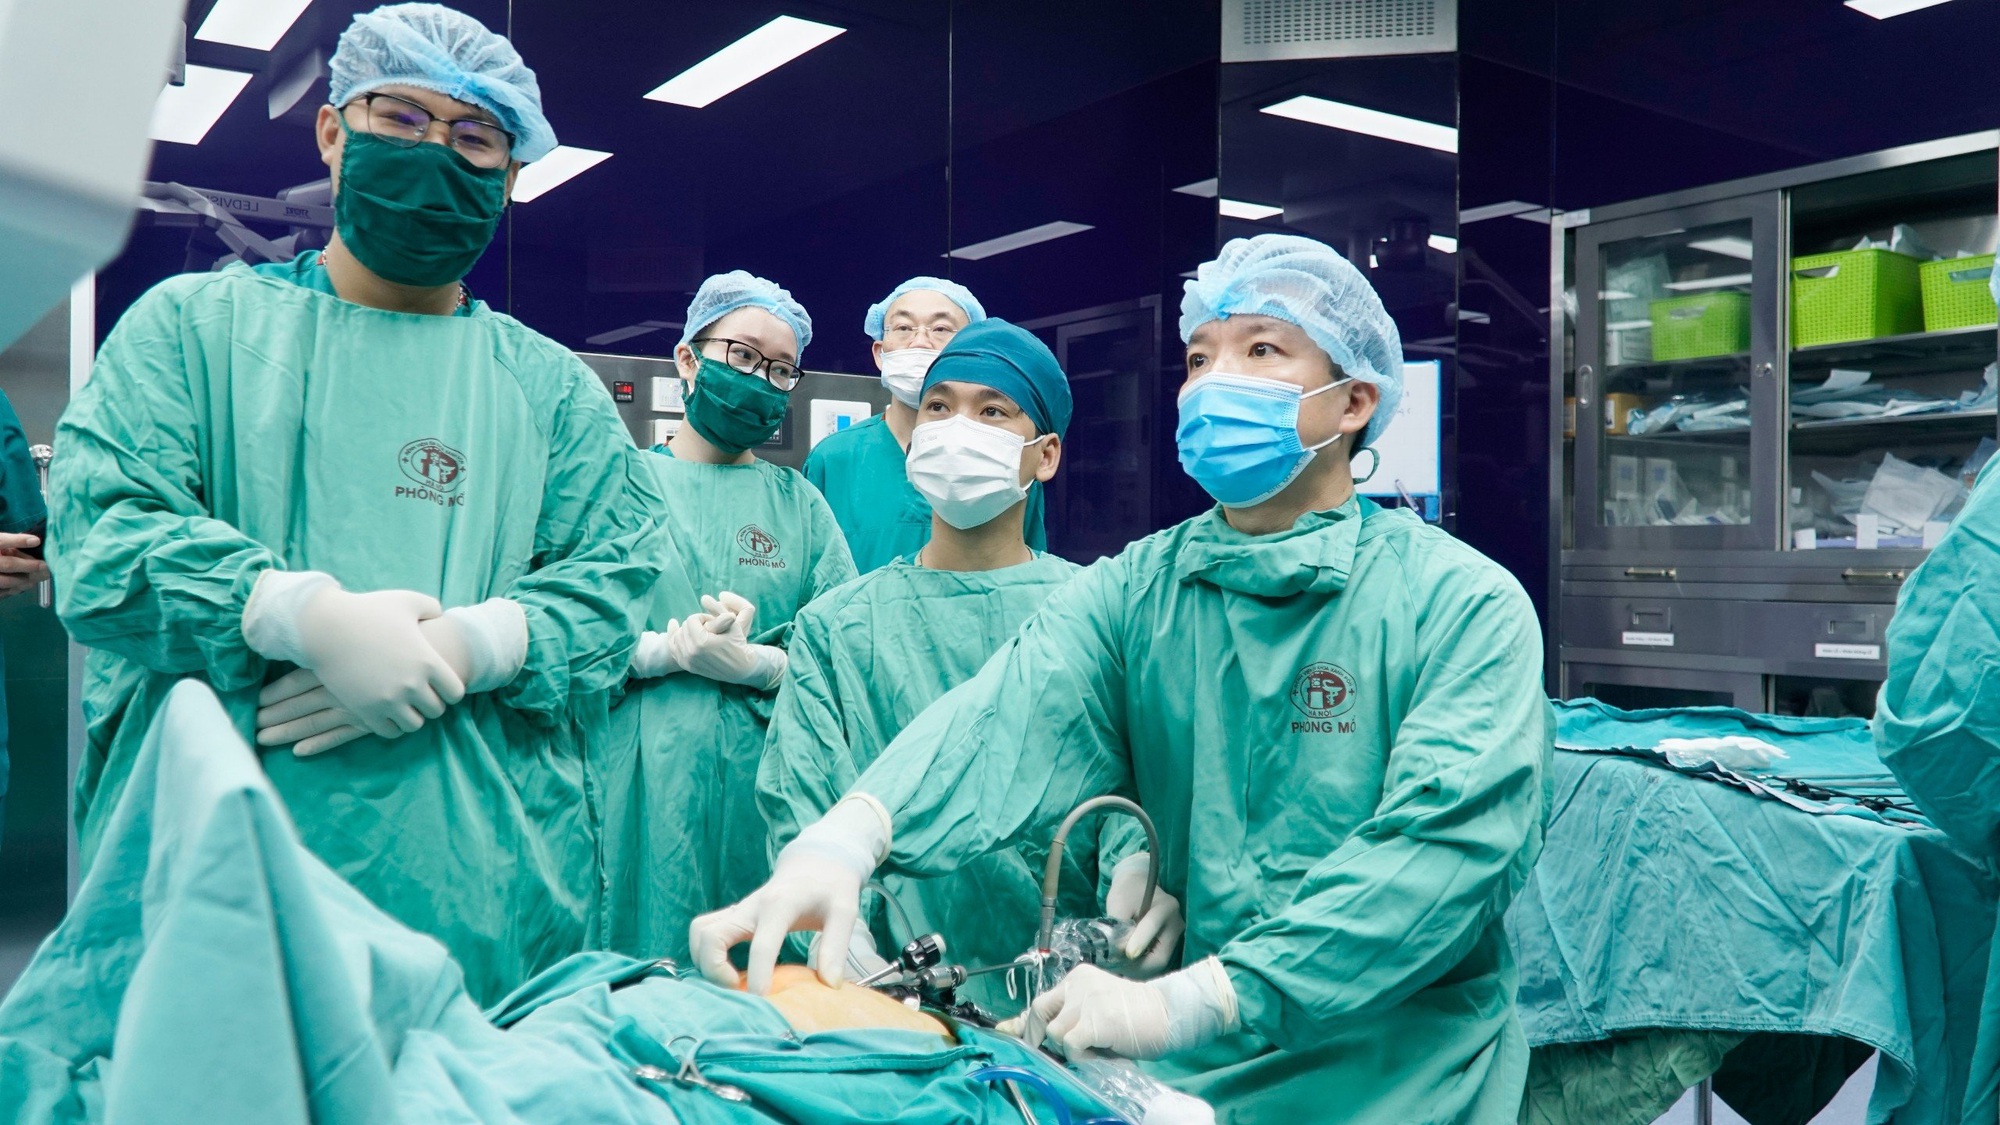 Gia đình Úc sang Việt Nam thực hiện phẫu thuật chỉ 2 nước làm được - Ảnh 3.